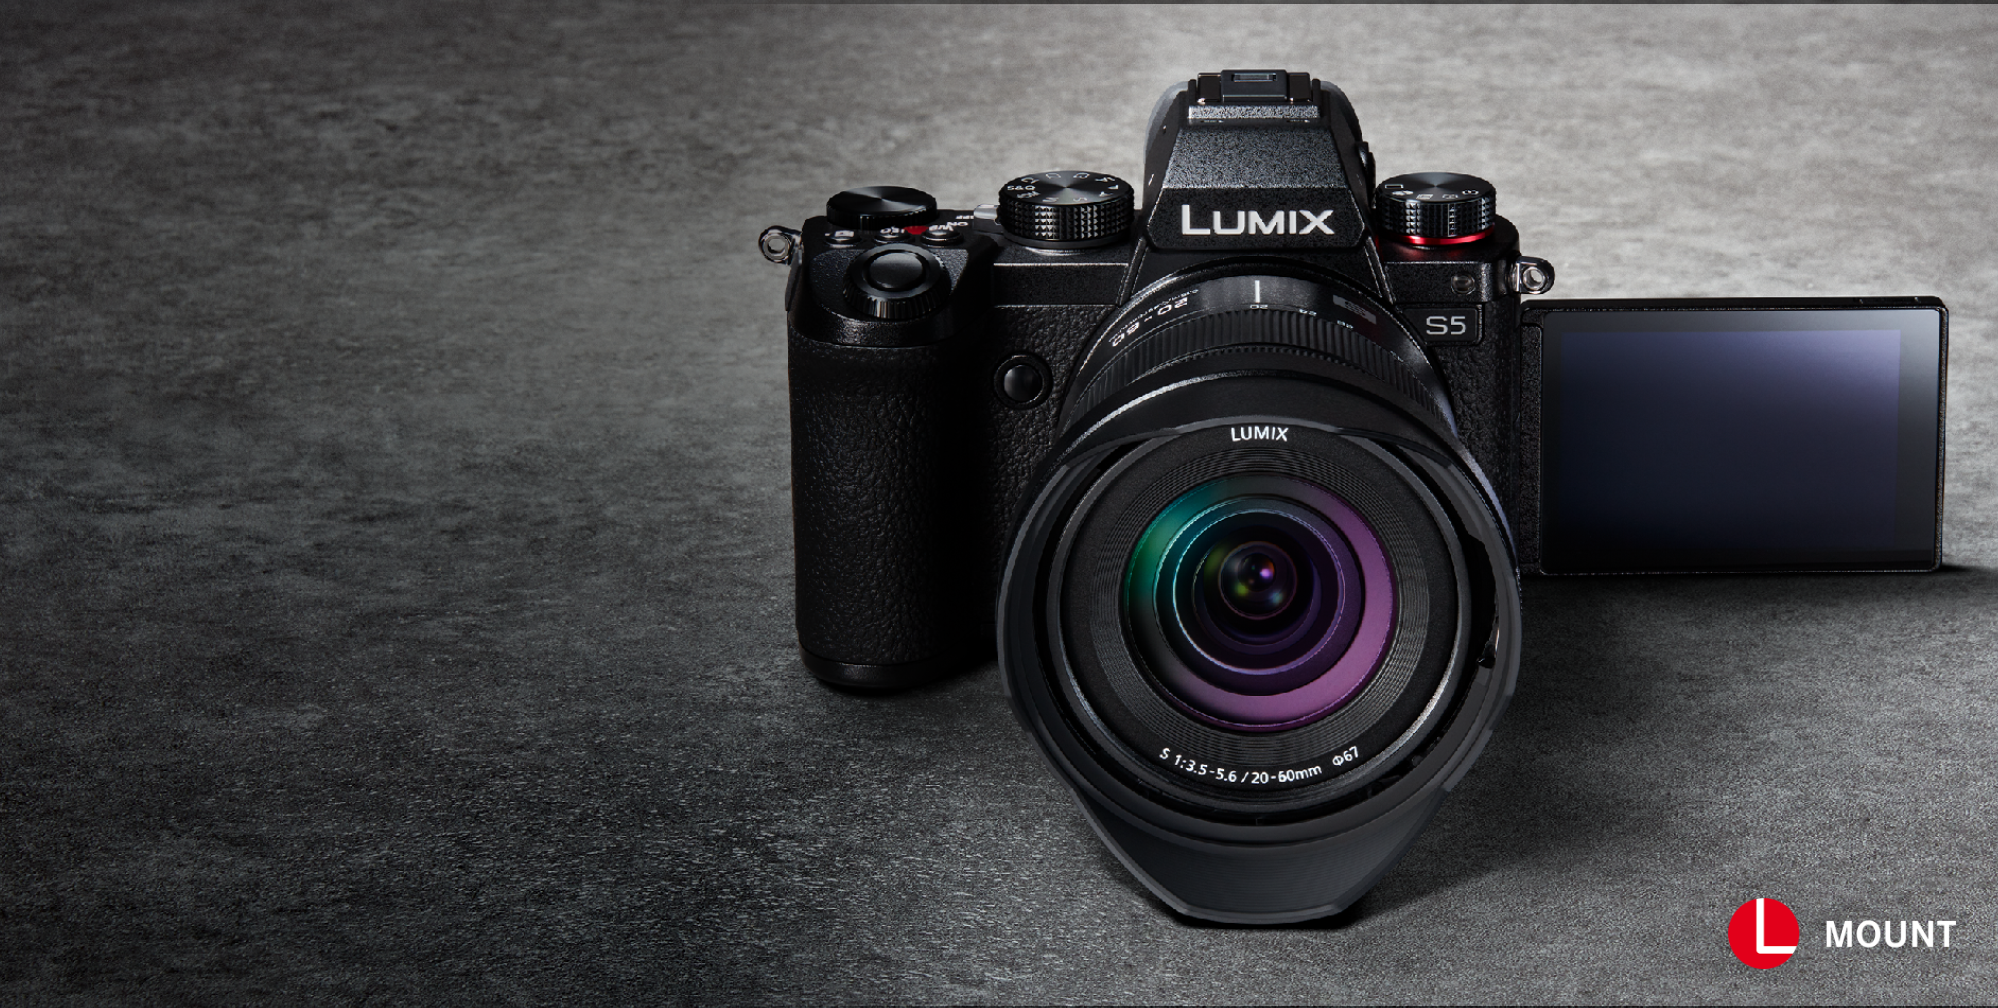 Panasonic LUMIX S5 Full Frame Mirrorless Camera with 20-60mm F3.5 